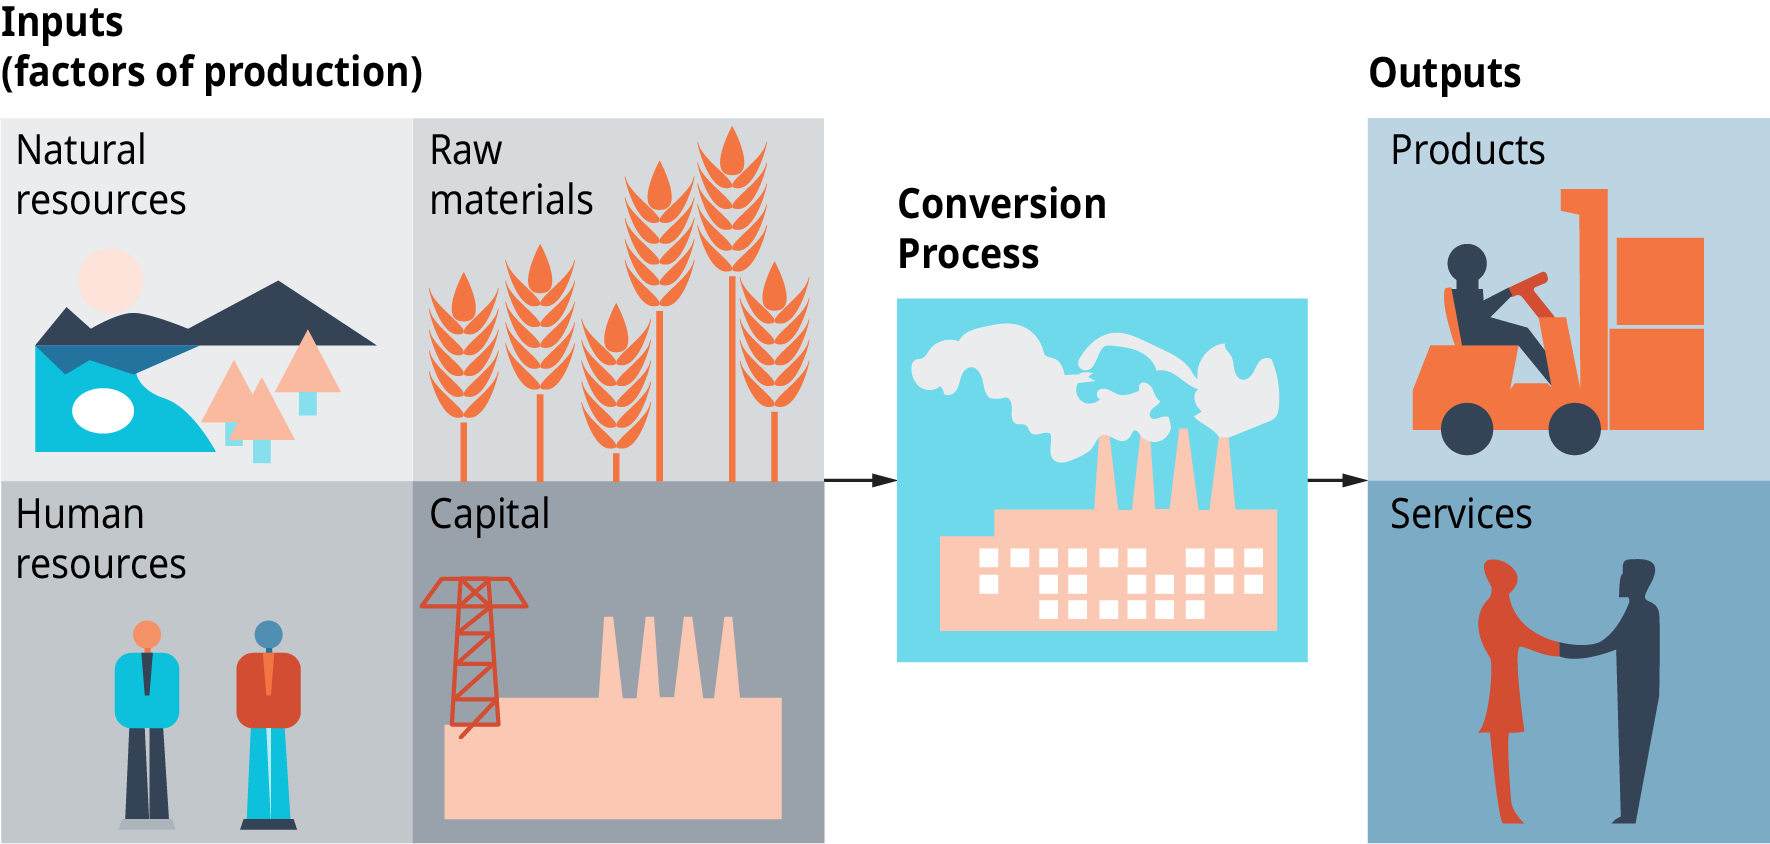 该图显示了作为生产要素的投入，如自然资源、人力资源、原材料和资本。 转换过程发生，输出是产品和服务。